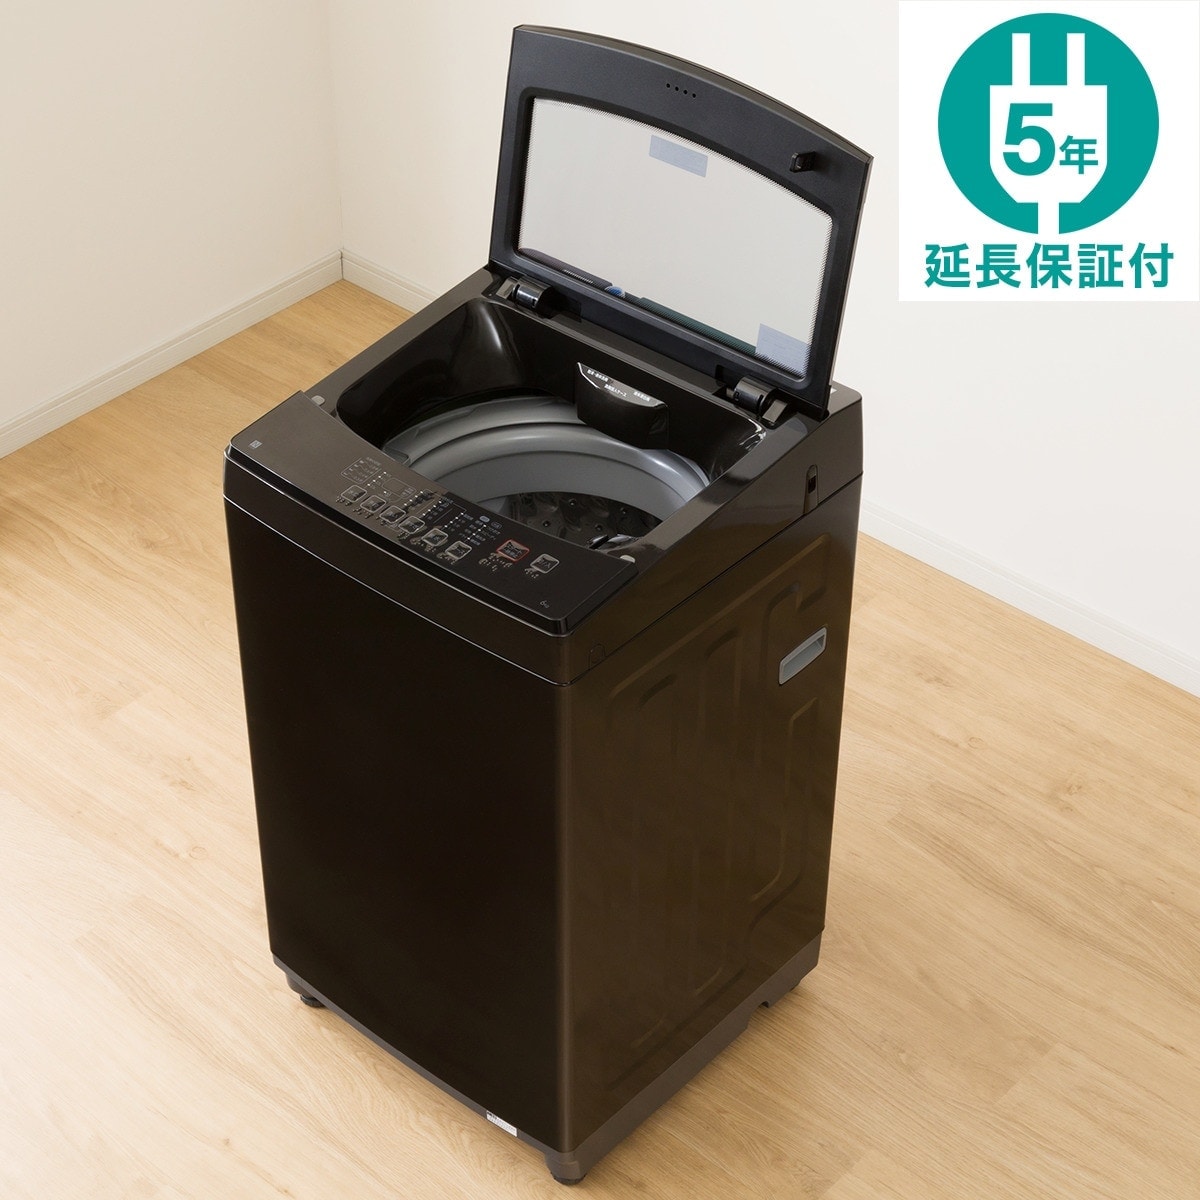 6kg全自動洗濯機(NTR60 ブラック) 延長保証付き通販 | ニトリネット